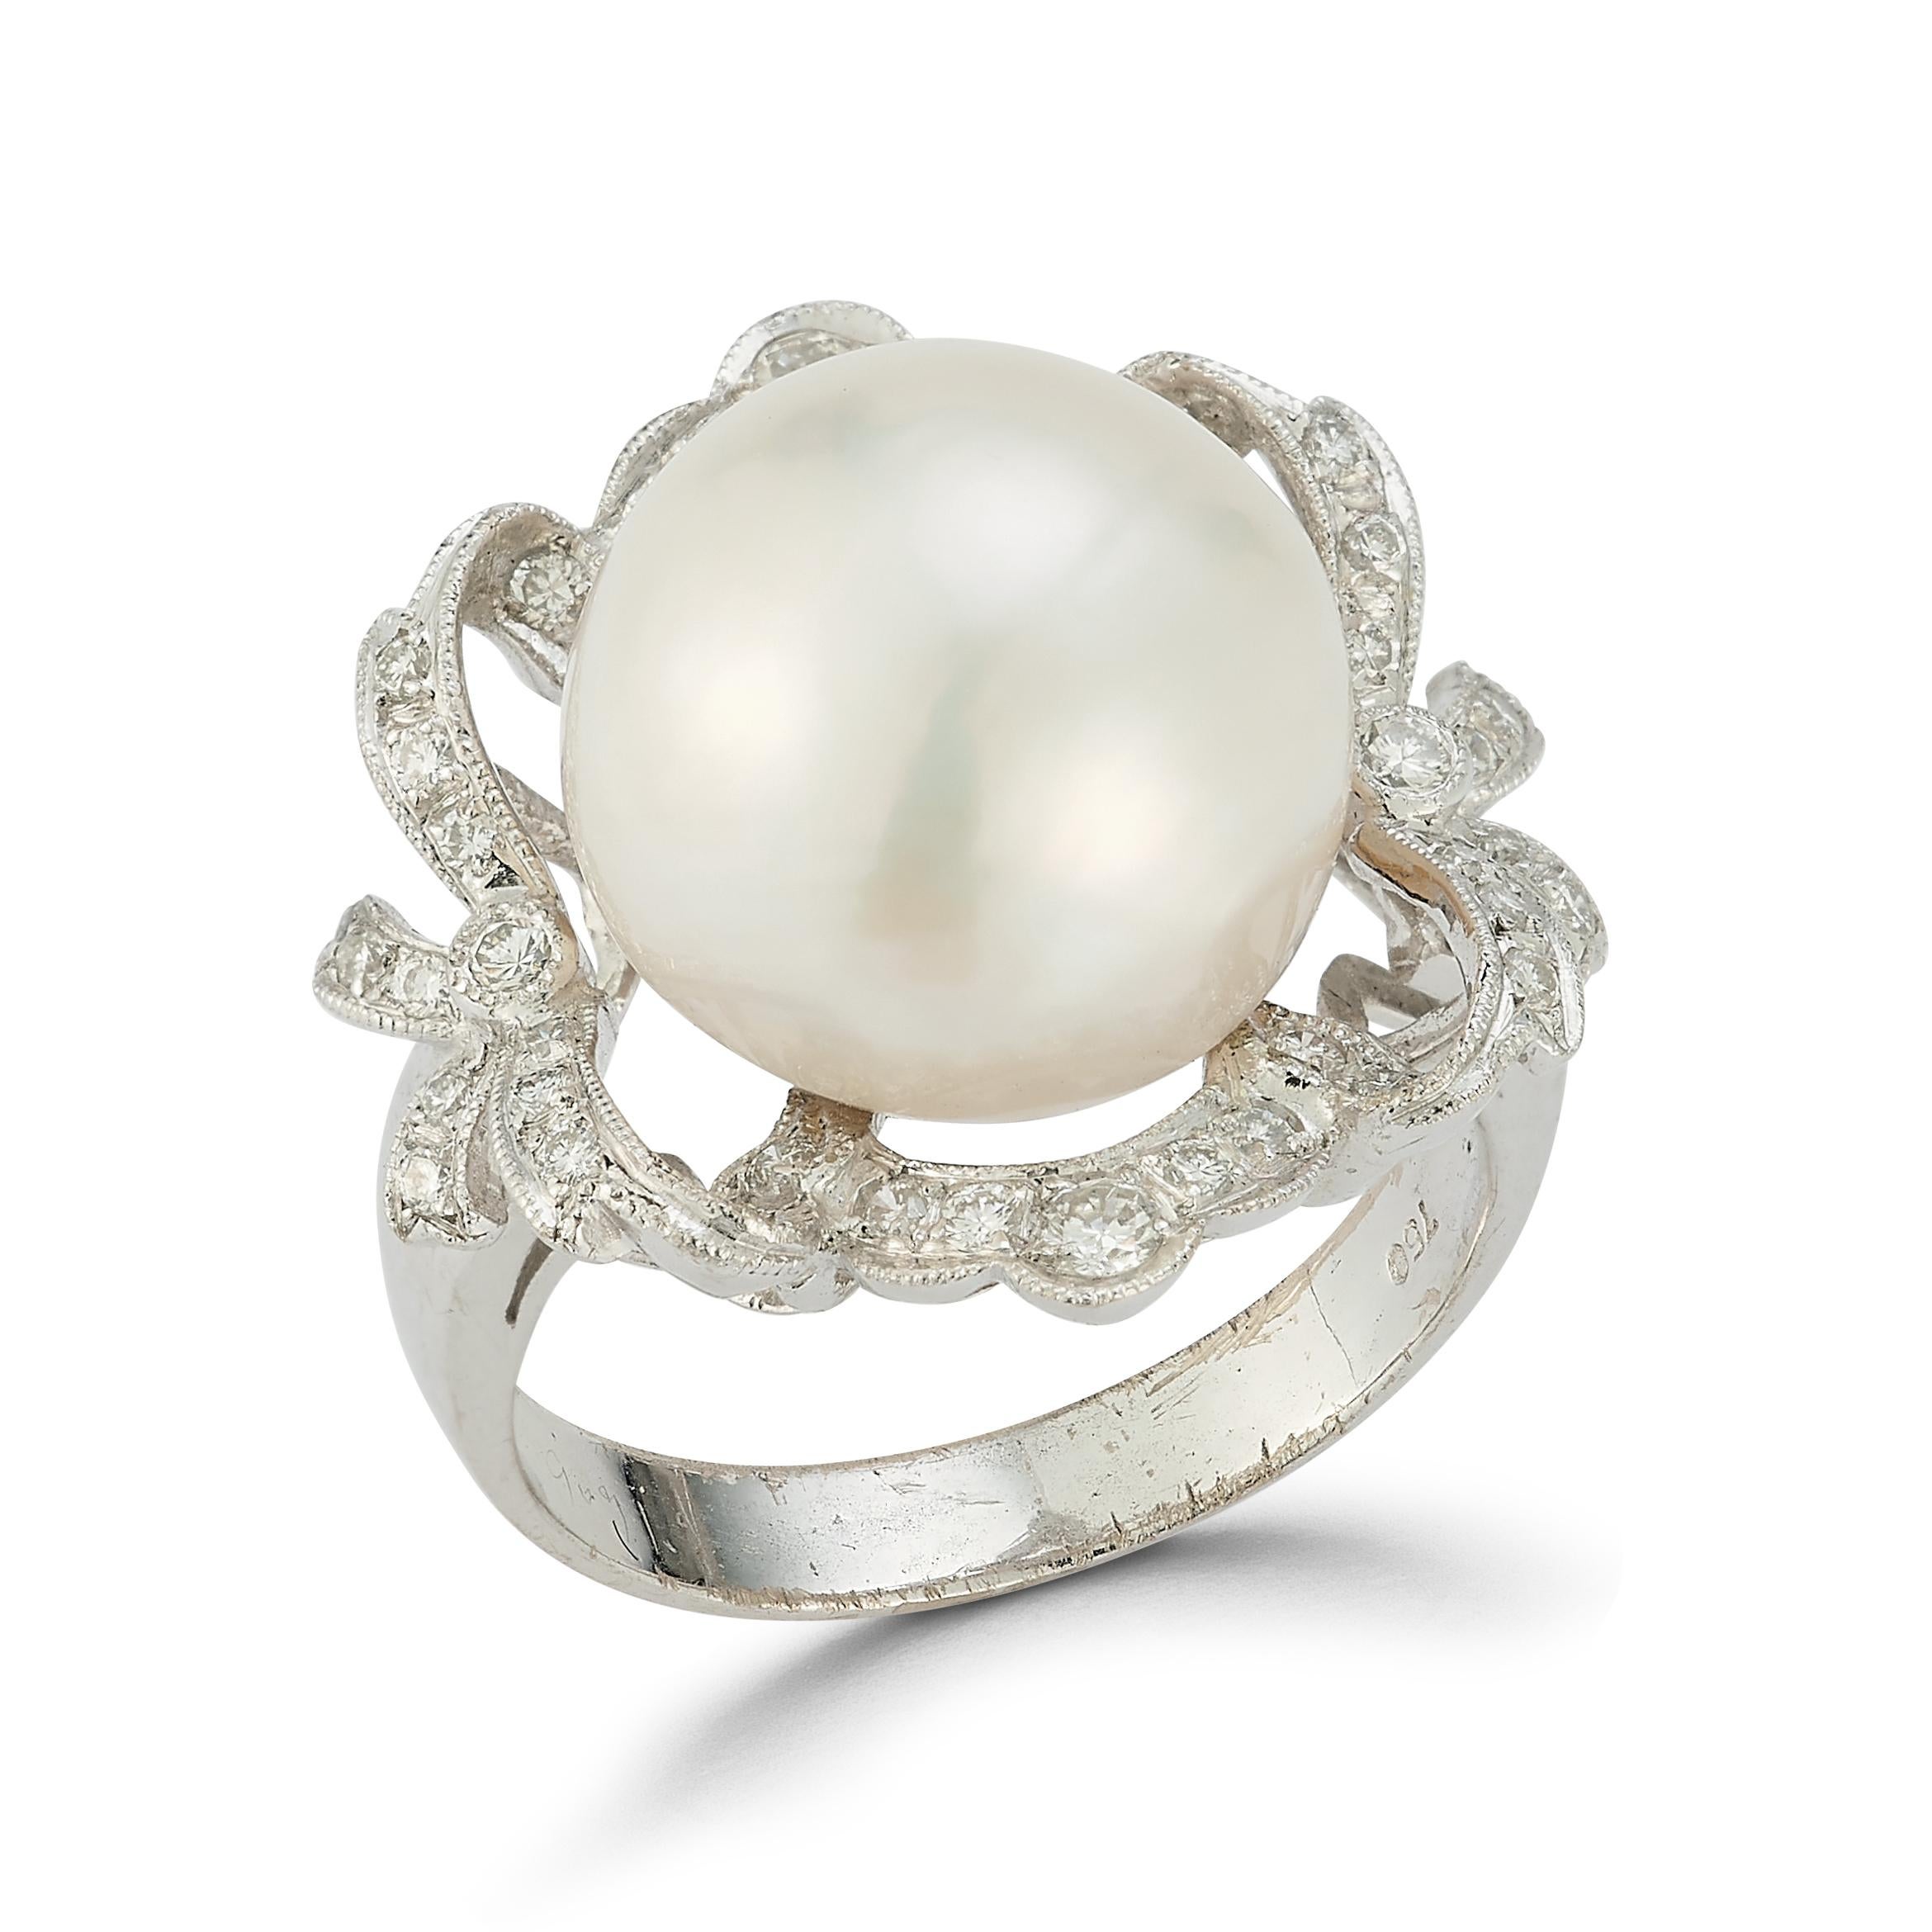 Perlen- und Diamantring

Ein Ring aus 18 Karat Weißgold, besetzt mit einer Perle, die von Diamanten im Rundschliff umrahmt ist

Ringgröße: 7

Kostenfrei anpassbar